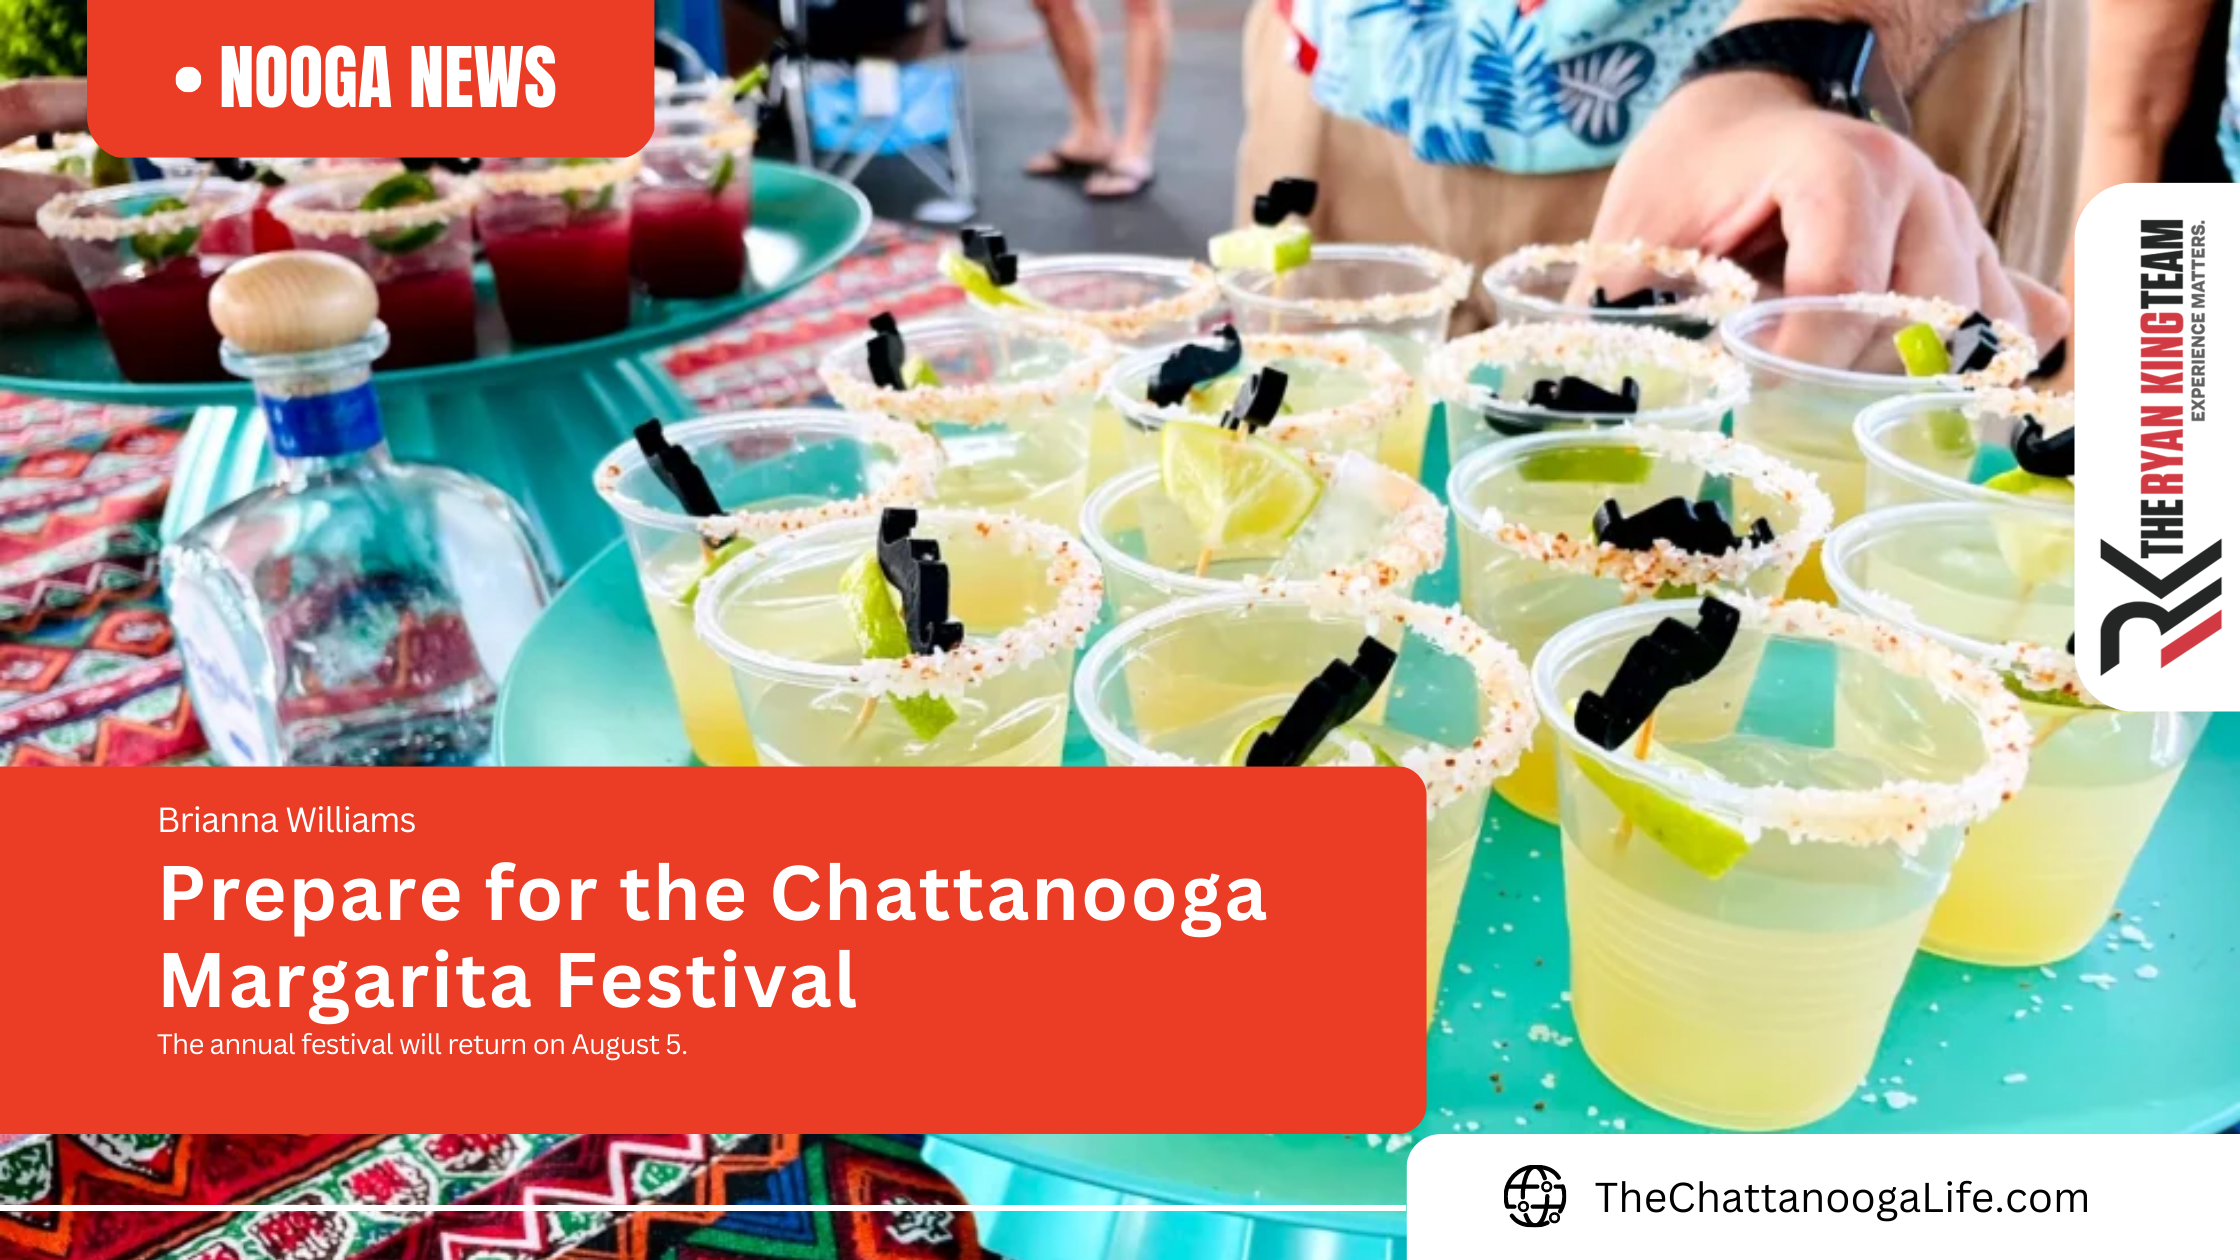 Prepare for the Chattanooga Margarita Festival